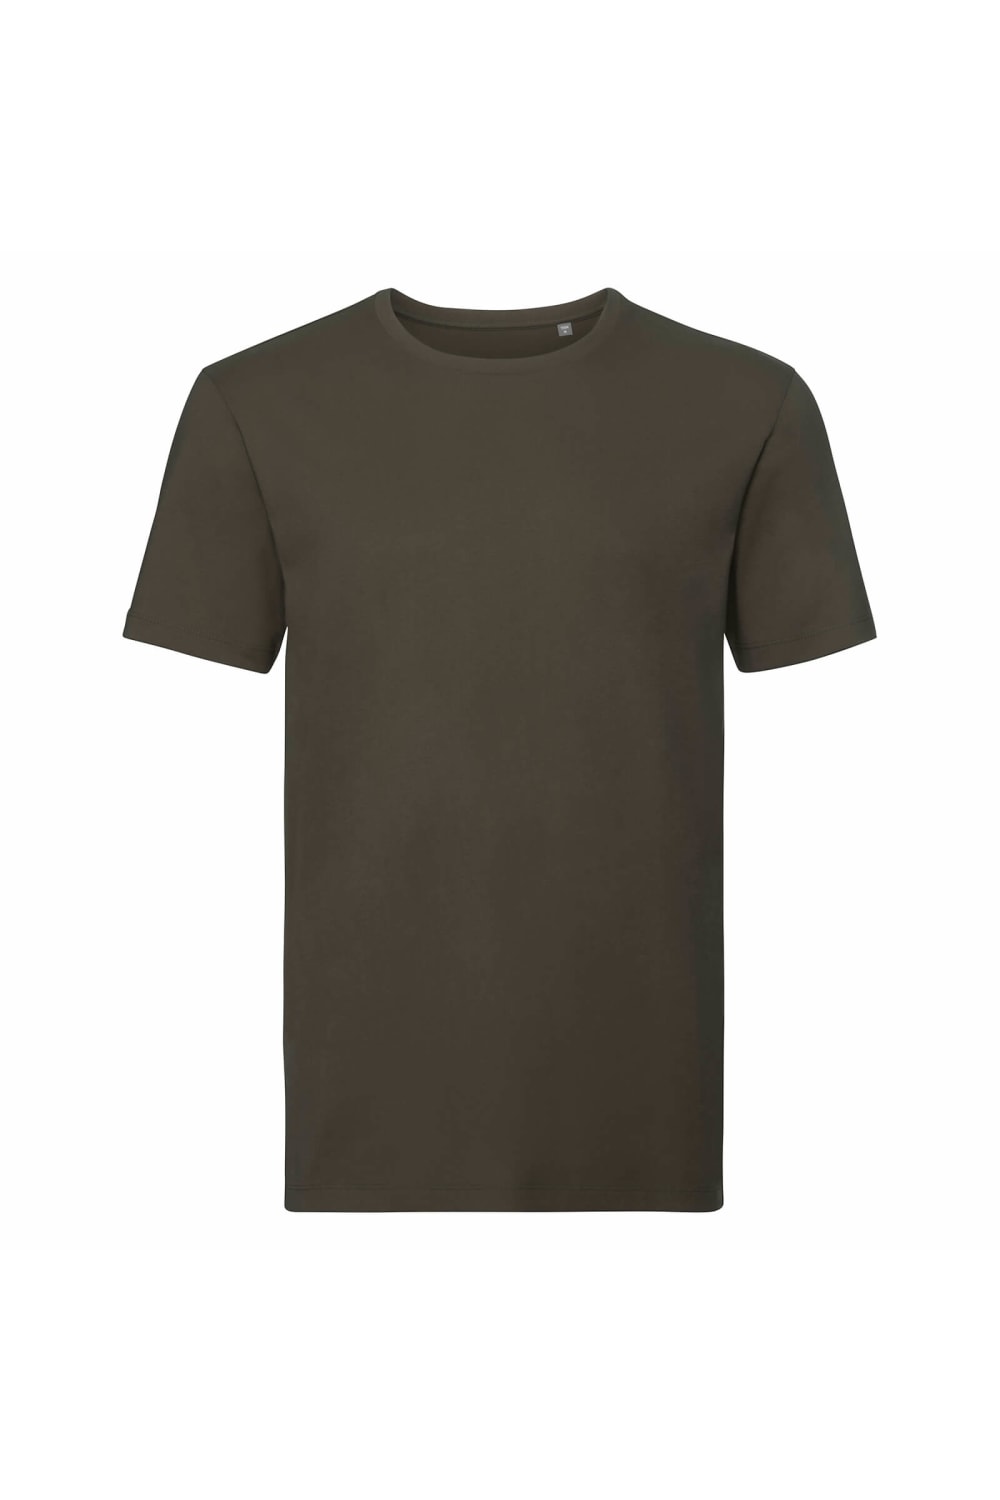 Russell Mens Organic Short-Sleeved T-Shirt (Dark Olive)